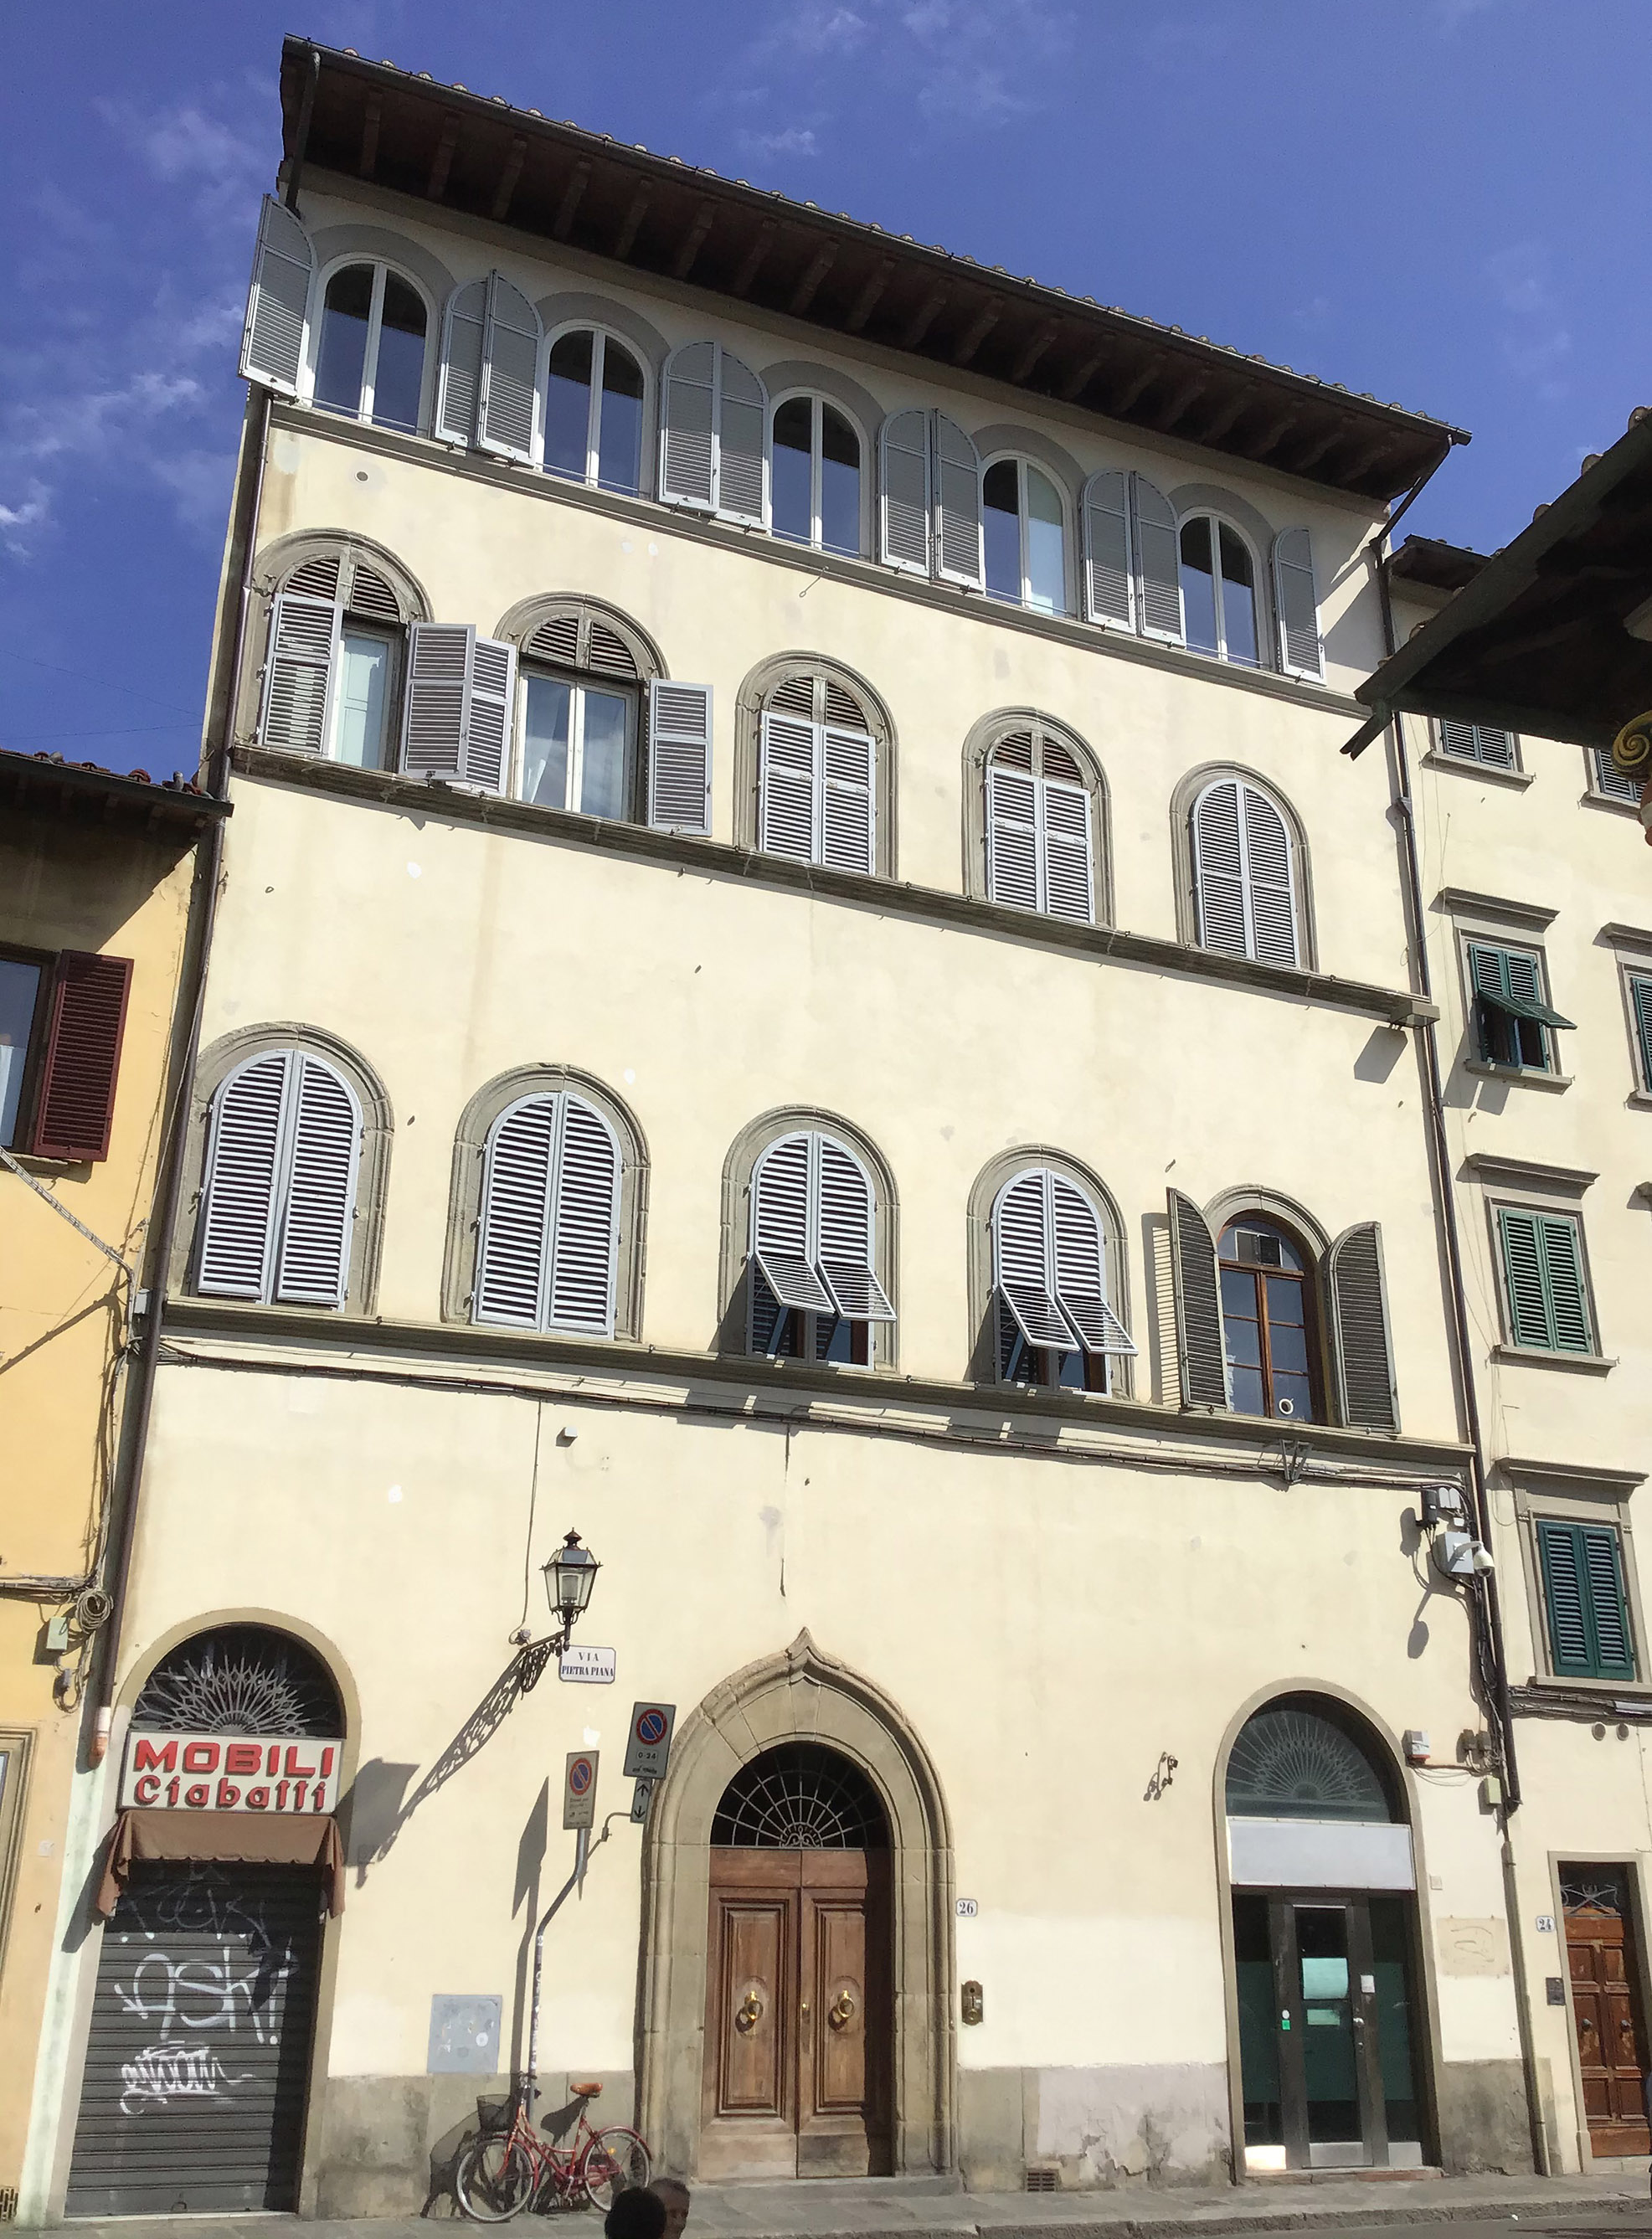 Palazzo già Zati (palazzo) - Firenze (FI) 